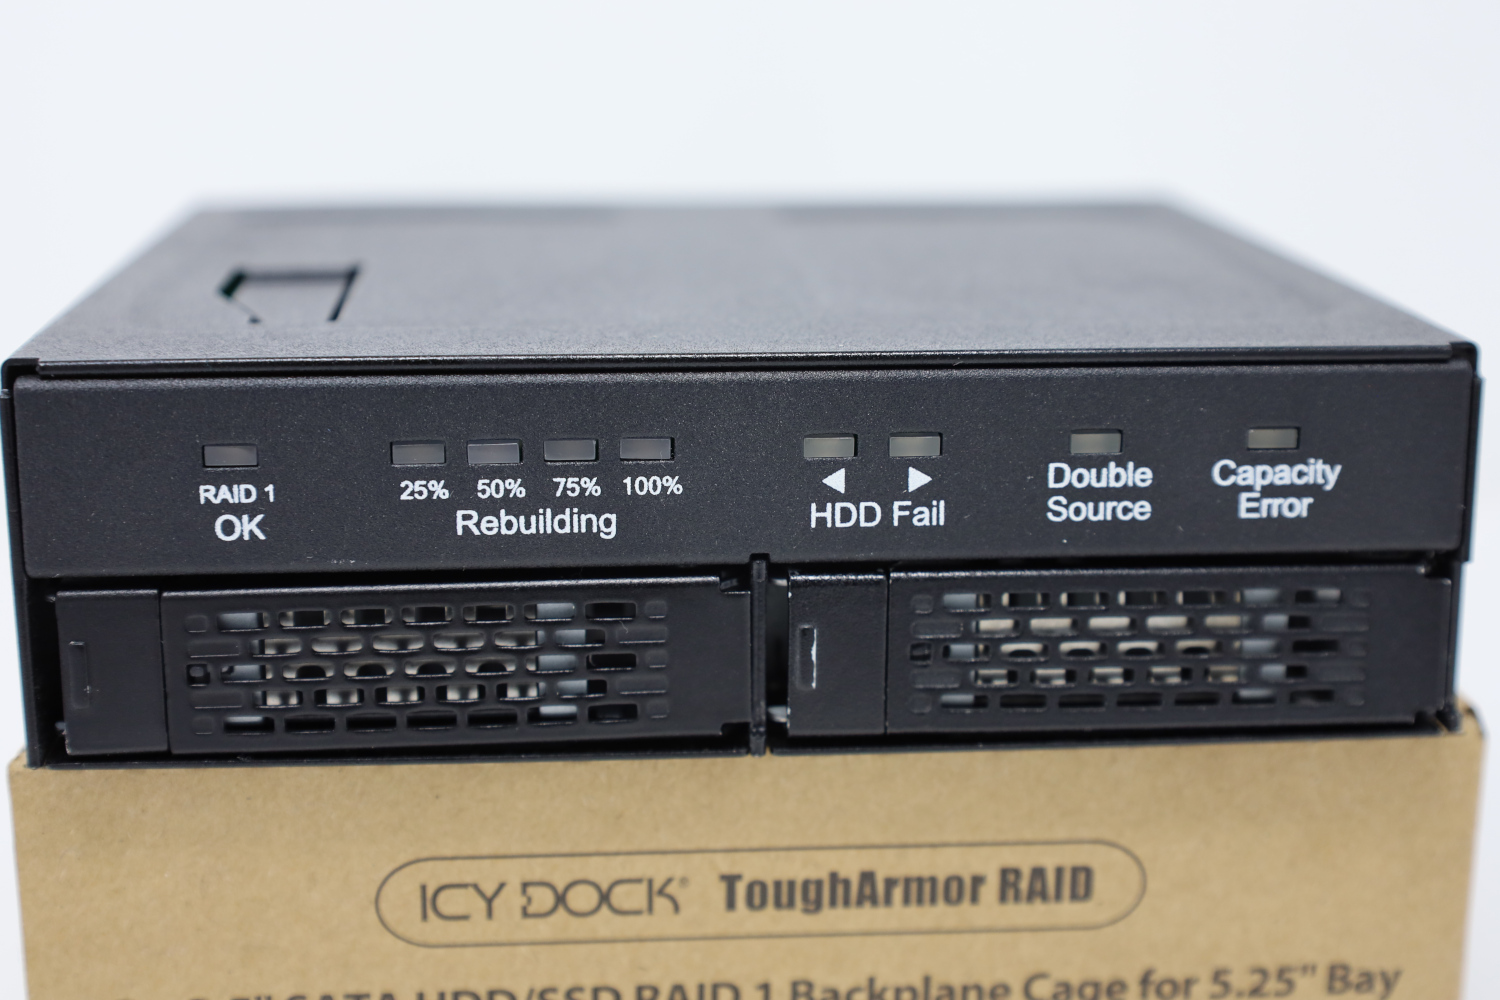 ICY DOCK MB902SPR-B RAID Enclosure Review - ServeTheHome